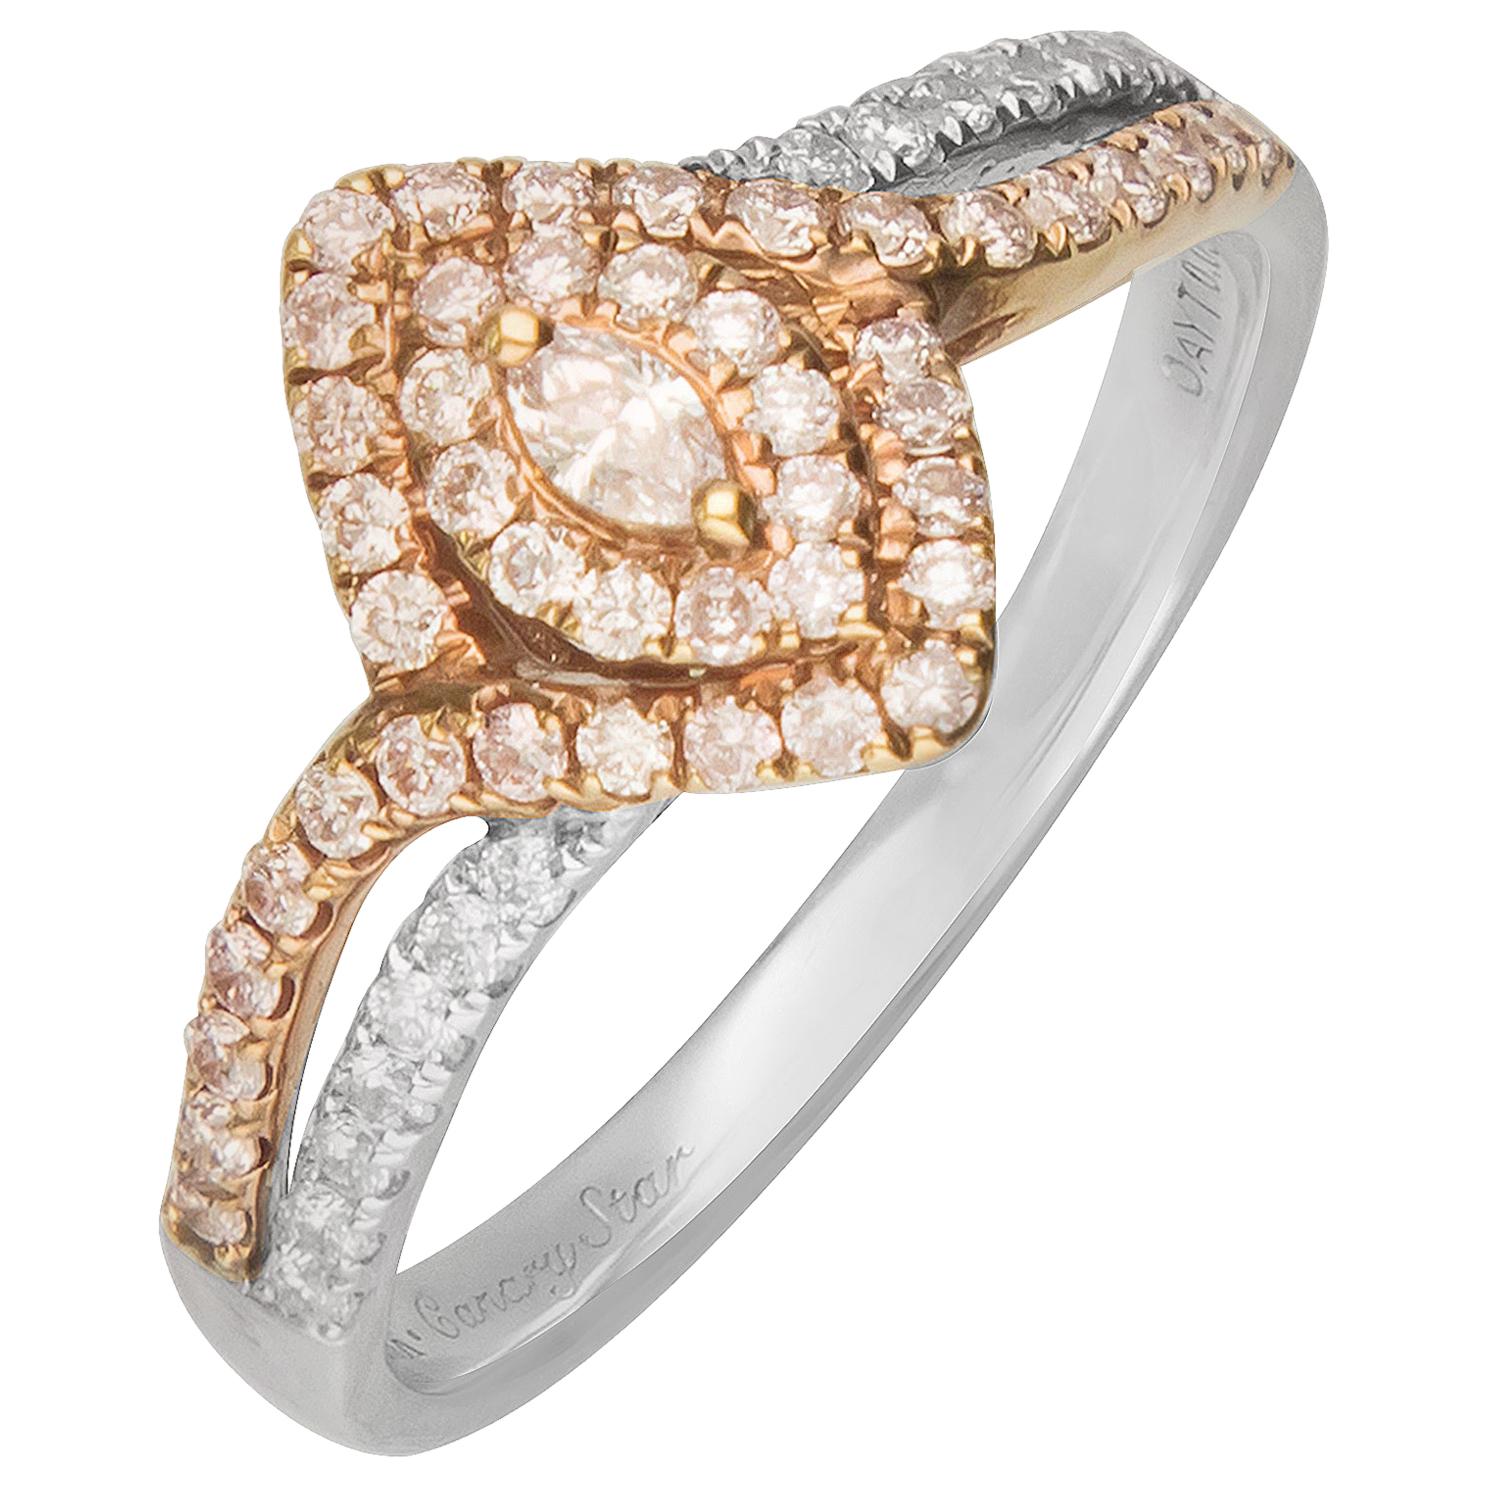 GAL Certified 0.43 Carat T.W. Pink Diamond 18 Karat Two-Tone Ring